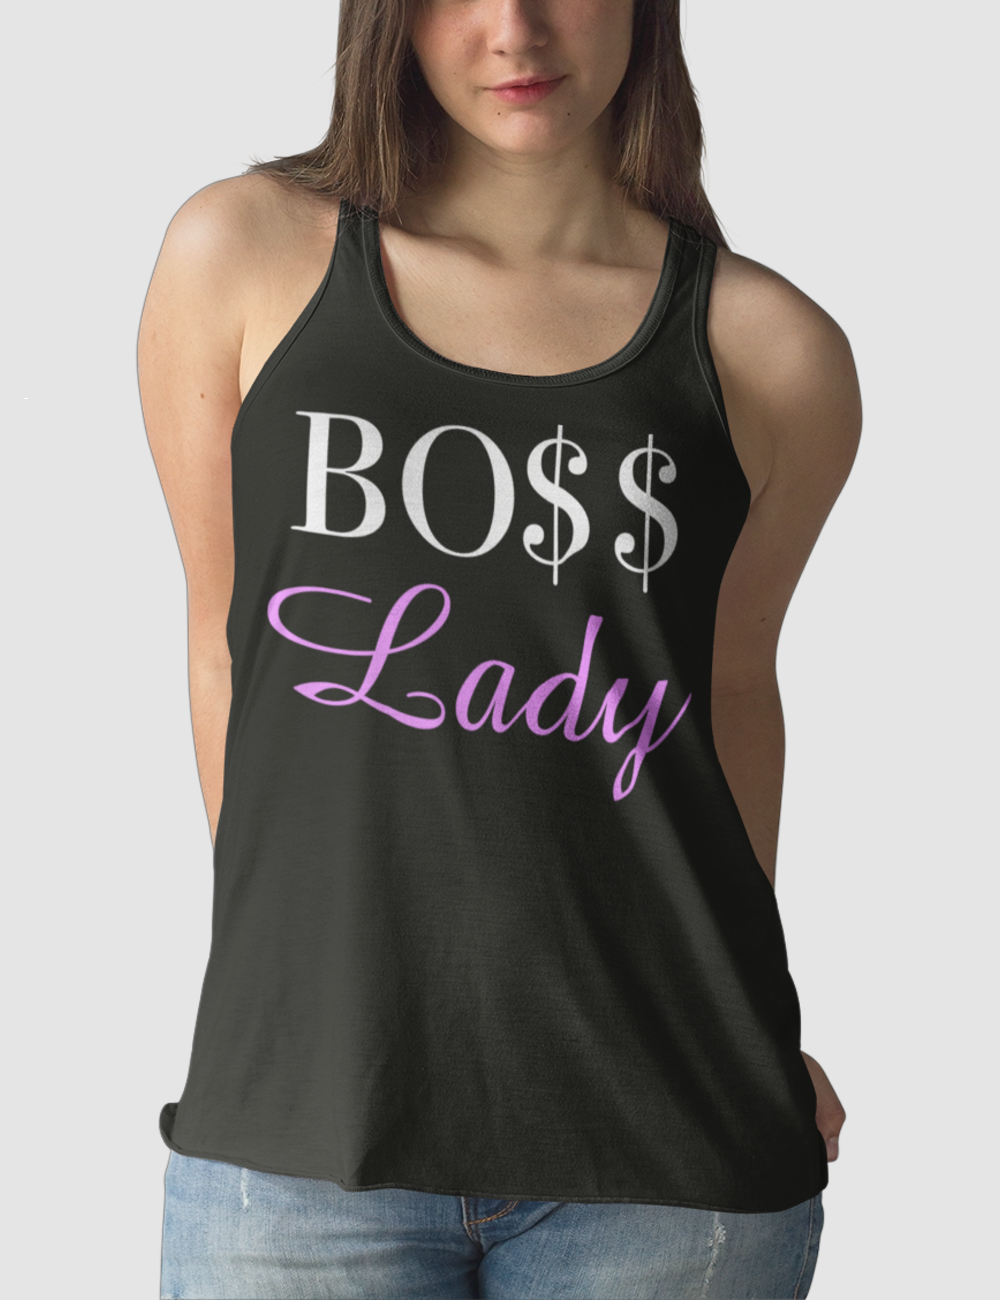 Boss Lady | Women's Cut Racerback Tank Top OniTakai